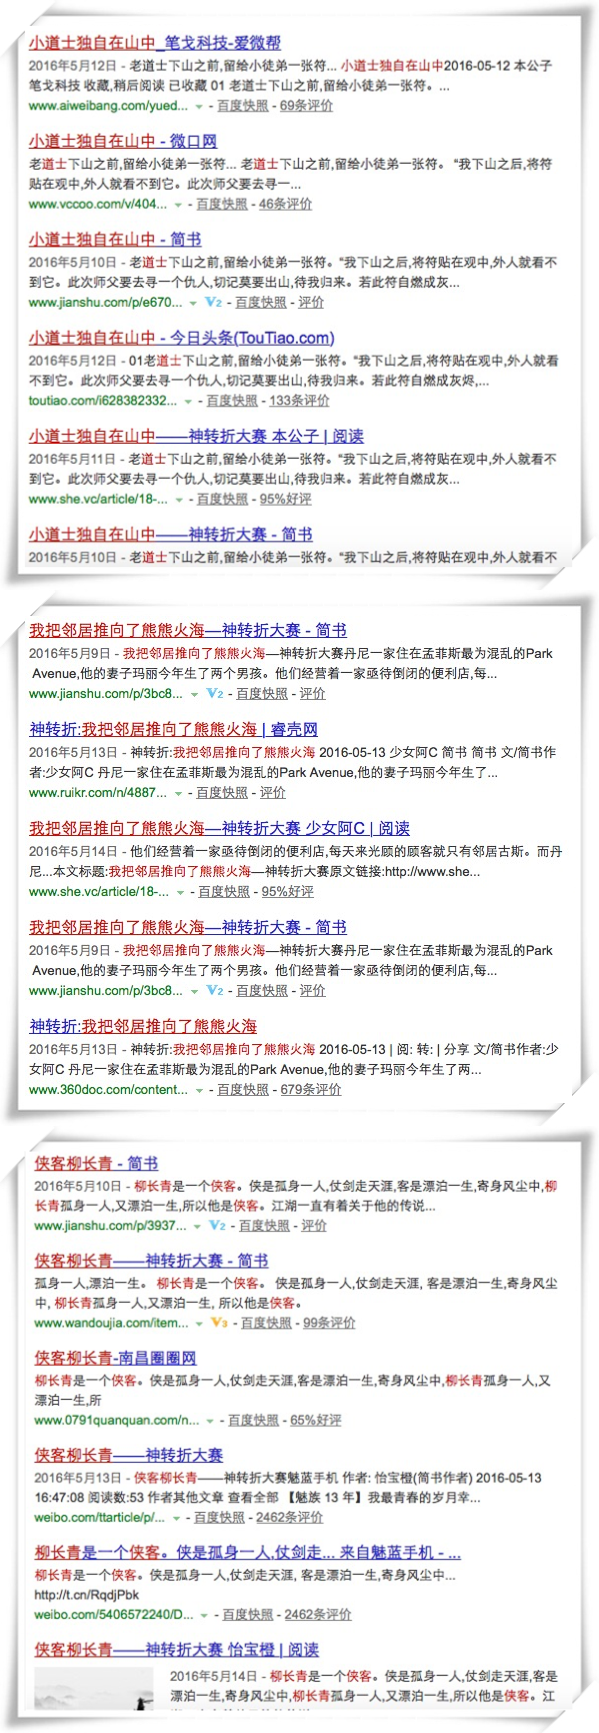 简书神转折“中文世界里最大的一次UGC”活动